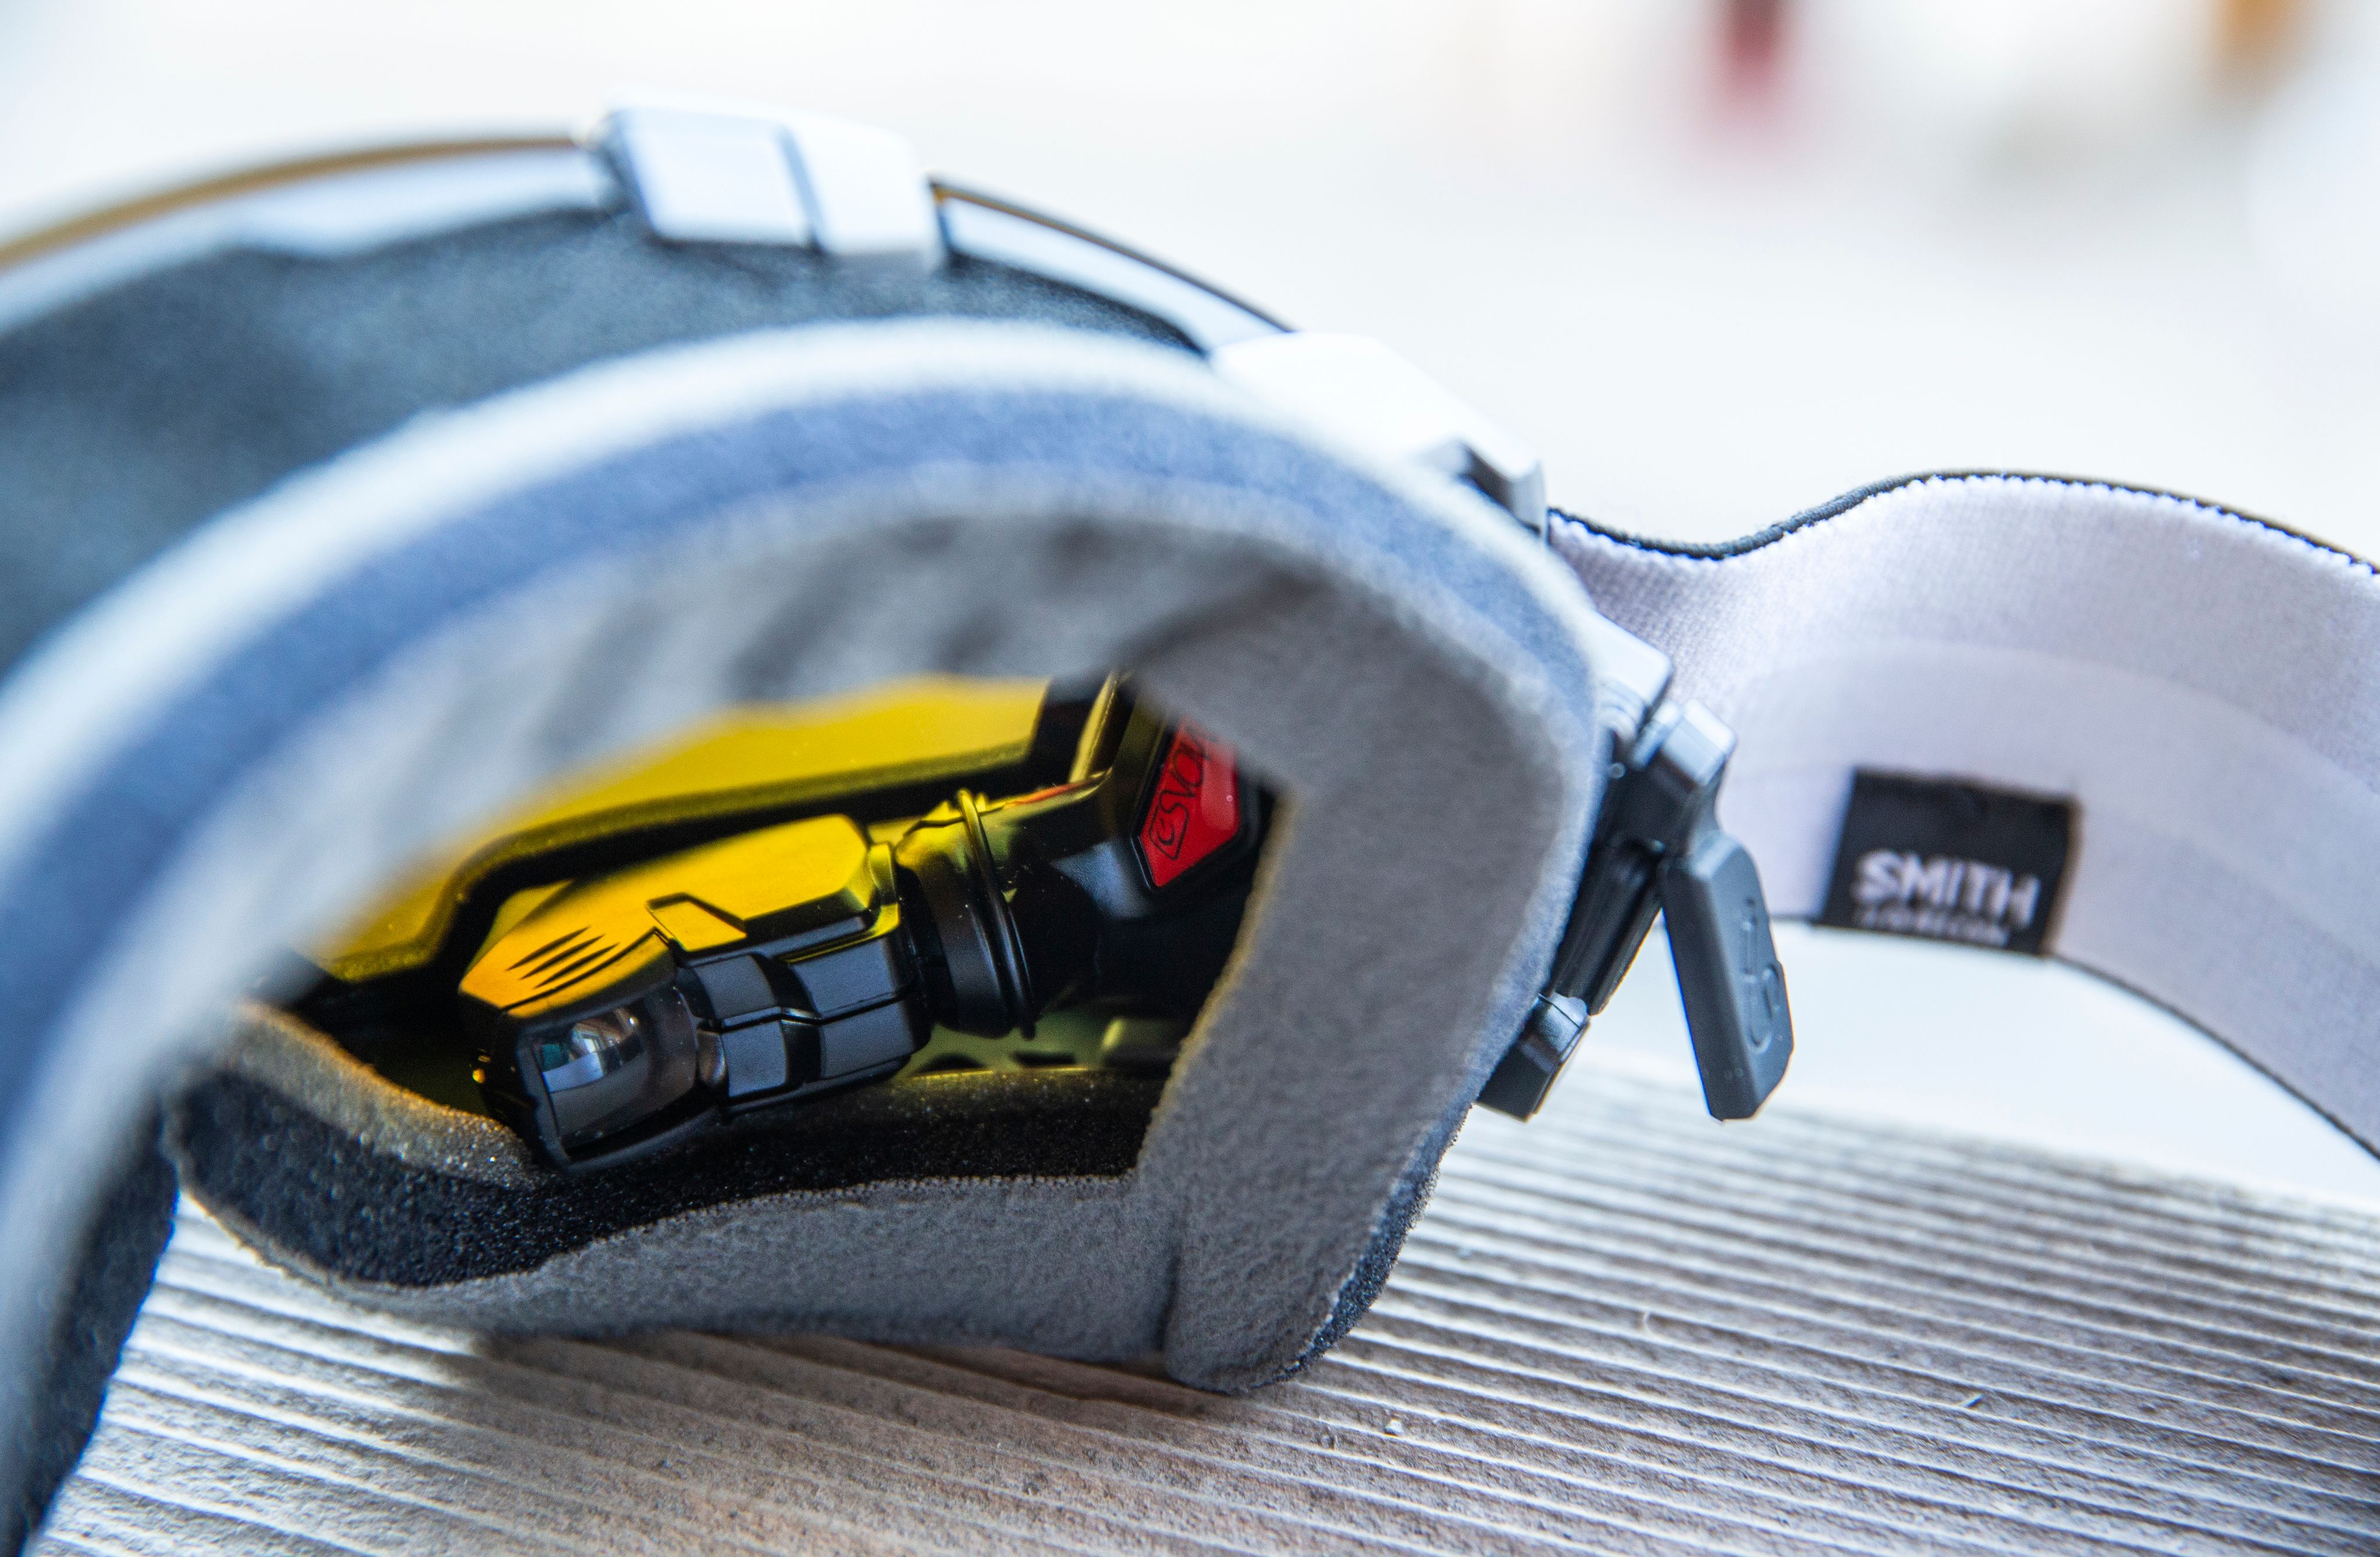 Toestand hoog te rechtvaardigen Op pad met een slimme skibril - Wintersport weblog